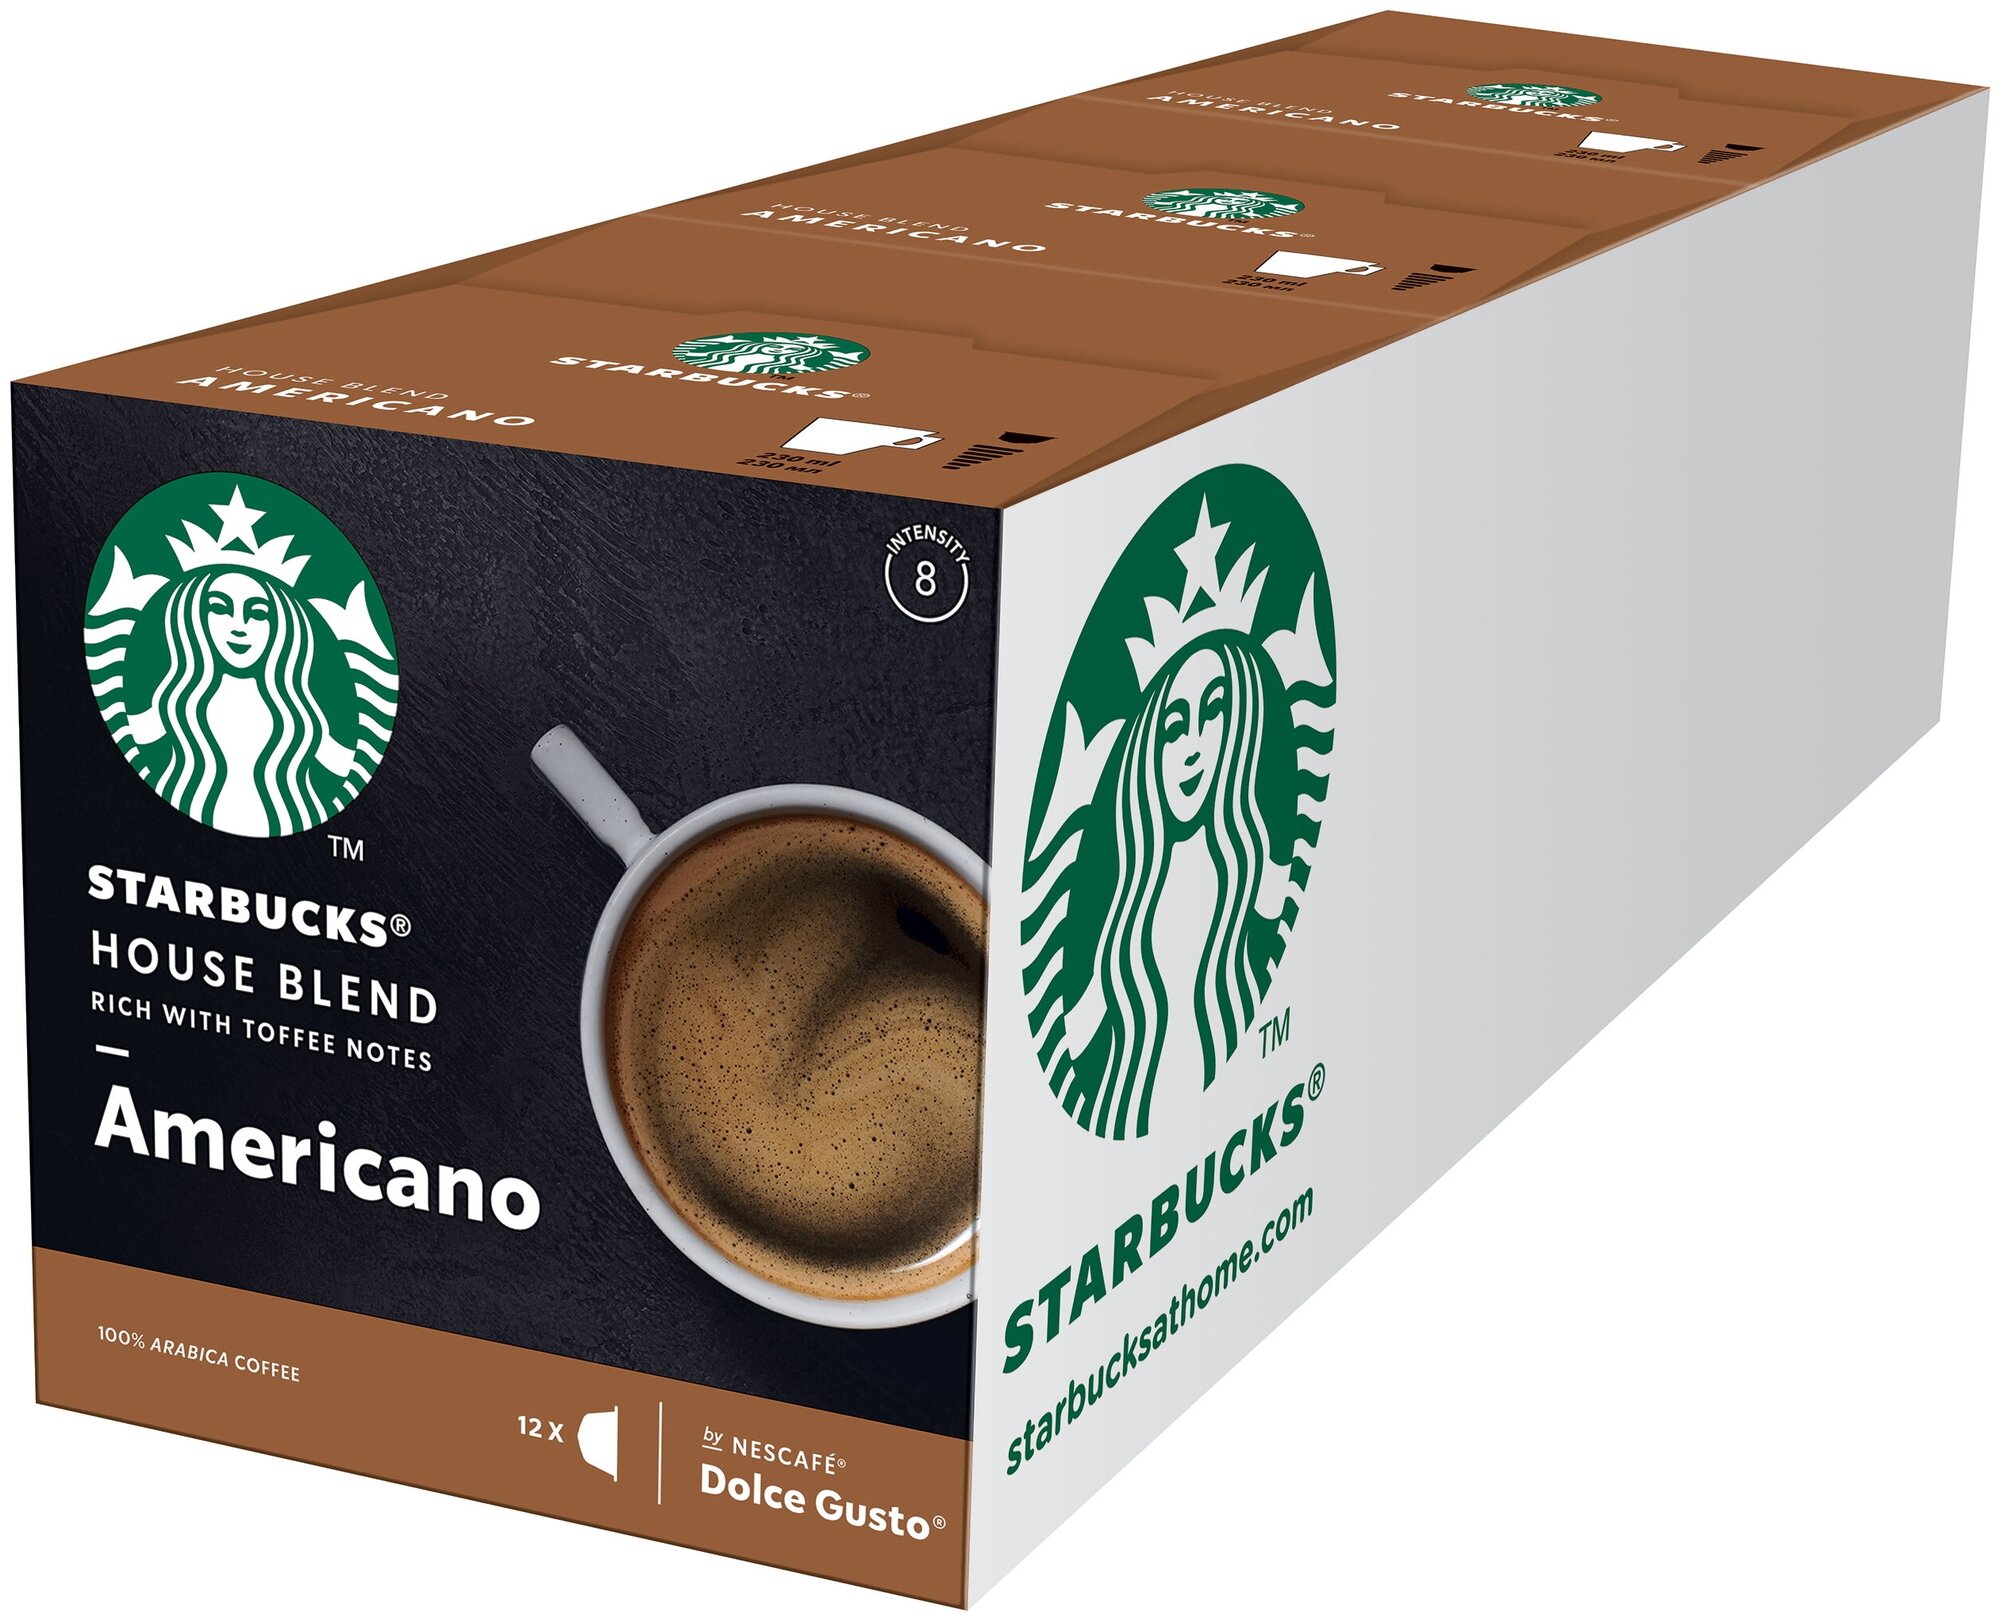 Кофе в капсулах Starbucks House Blend Americano для Nescafe Dolce Gusto, 12 кап. в уп., 3 уп. (36 капсул) - фотография № 3